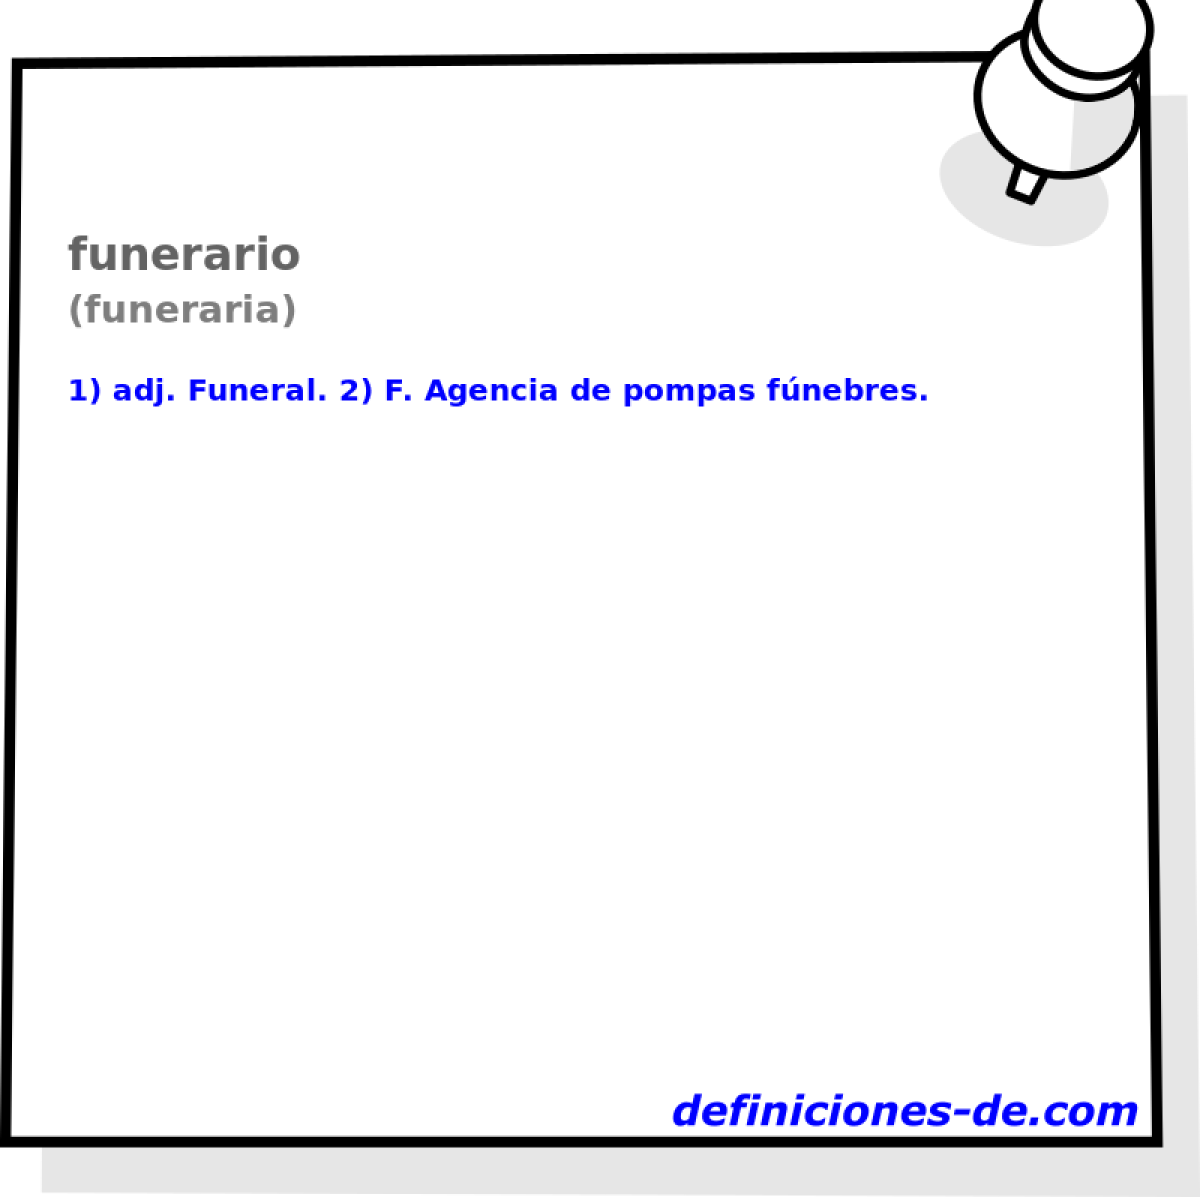 funerario (funeraria)